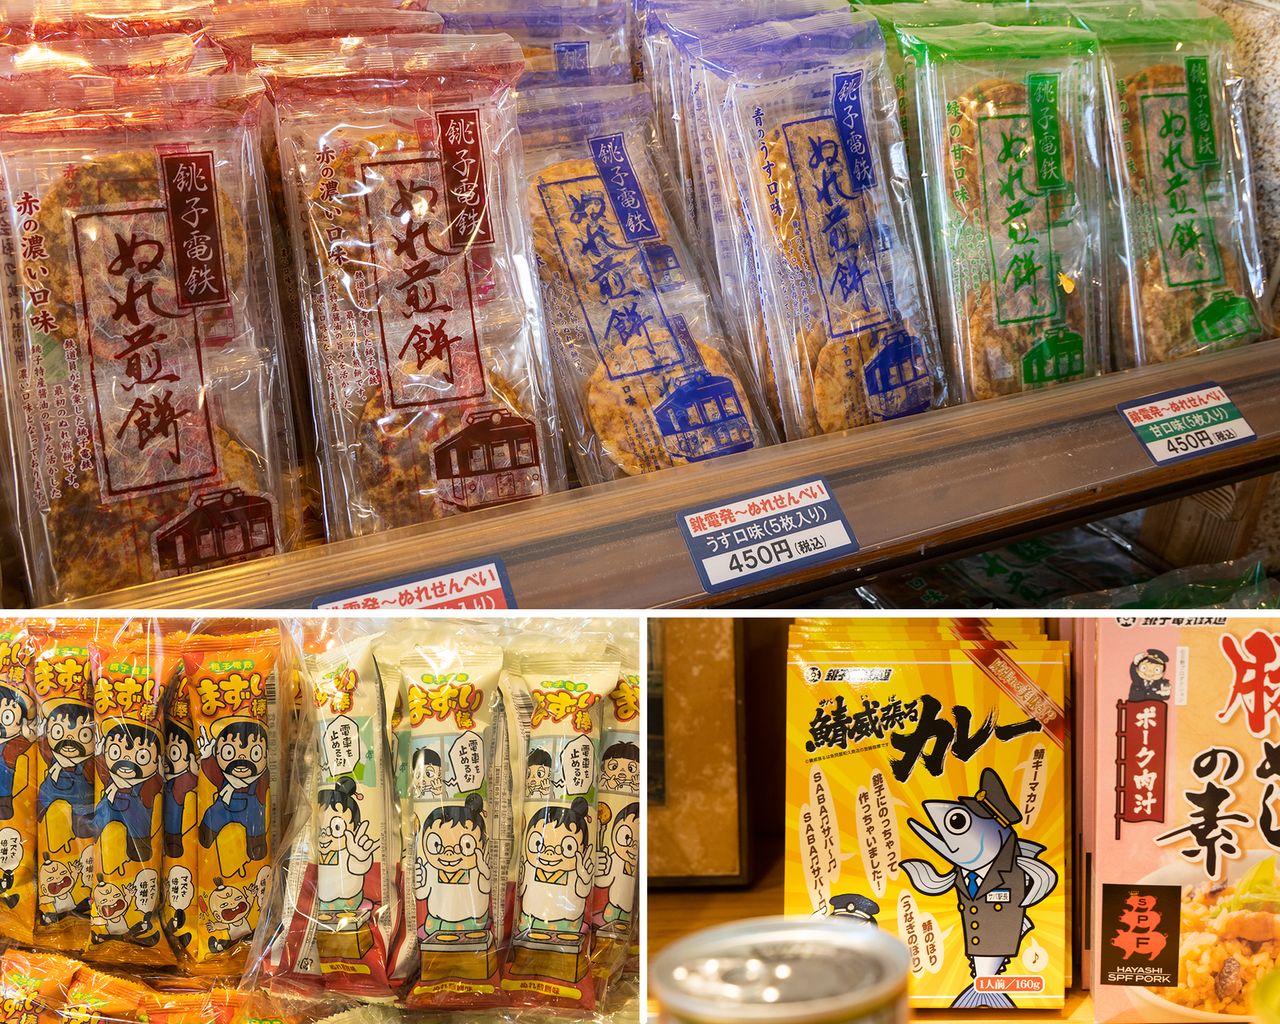 廃線の危機を救った「ぬれ煎餅」（上）は、今や銚子土産の定番。まずい棒（左下）や鯖威張るカレー（右下）なども人気だ